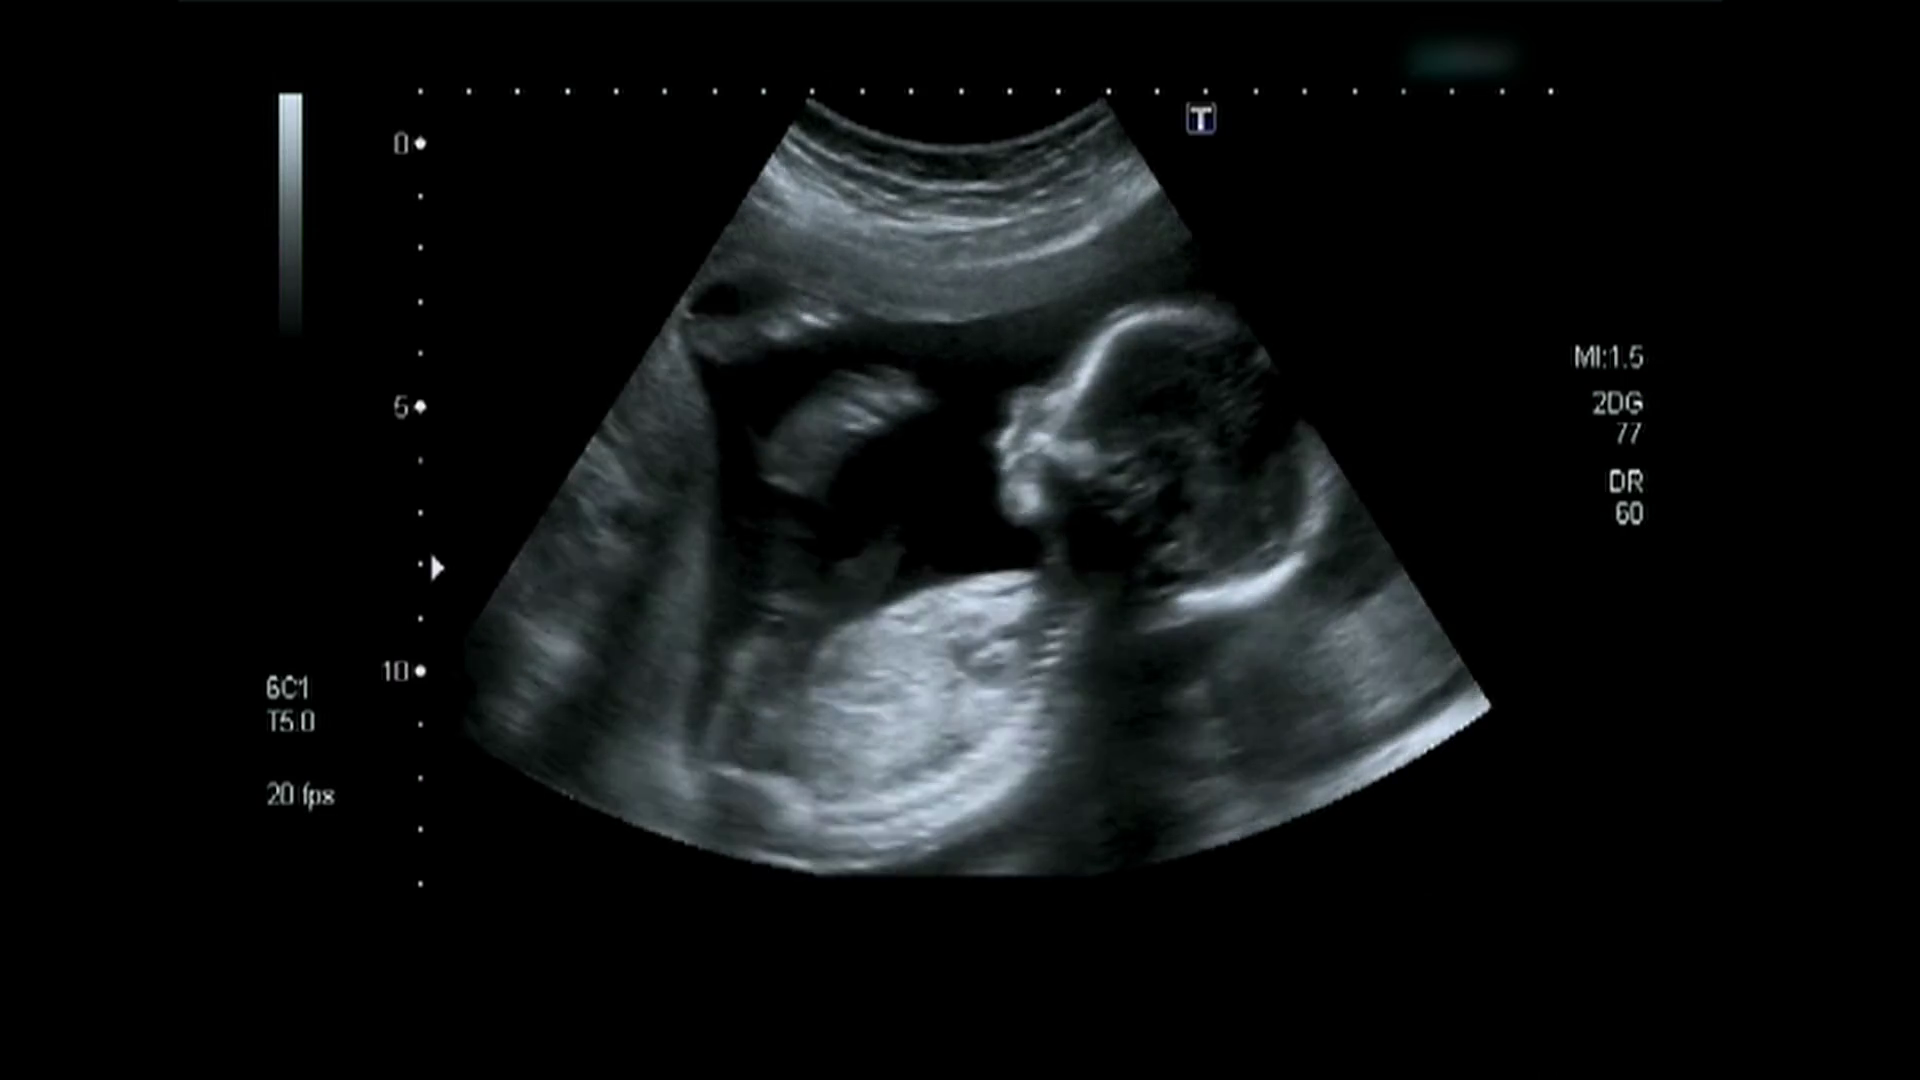 2D Ultrasound Image. 3D ULTRA